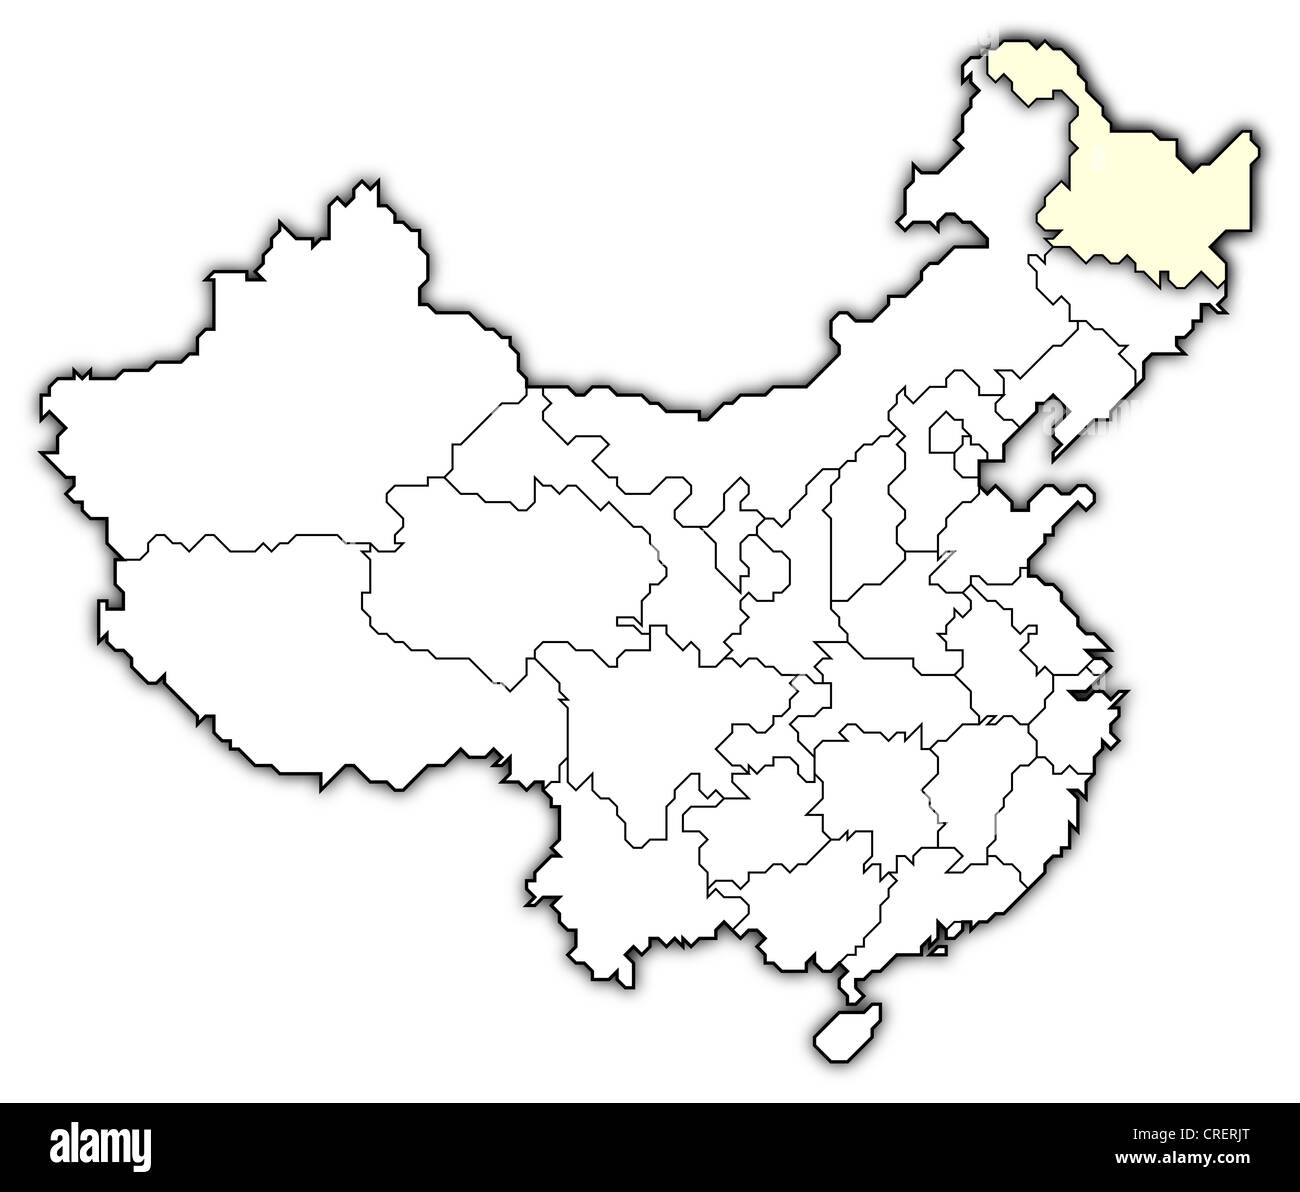 Mappa politica della Cina con le diverse province dove Heilongjiang è evidenziata. Foto Stock